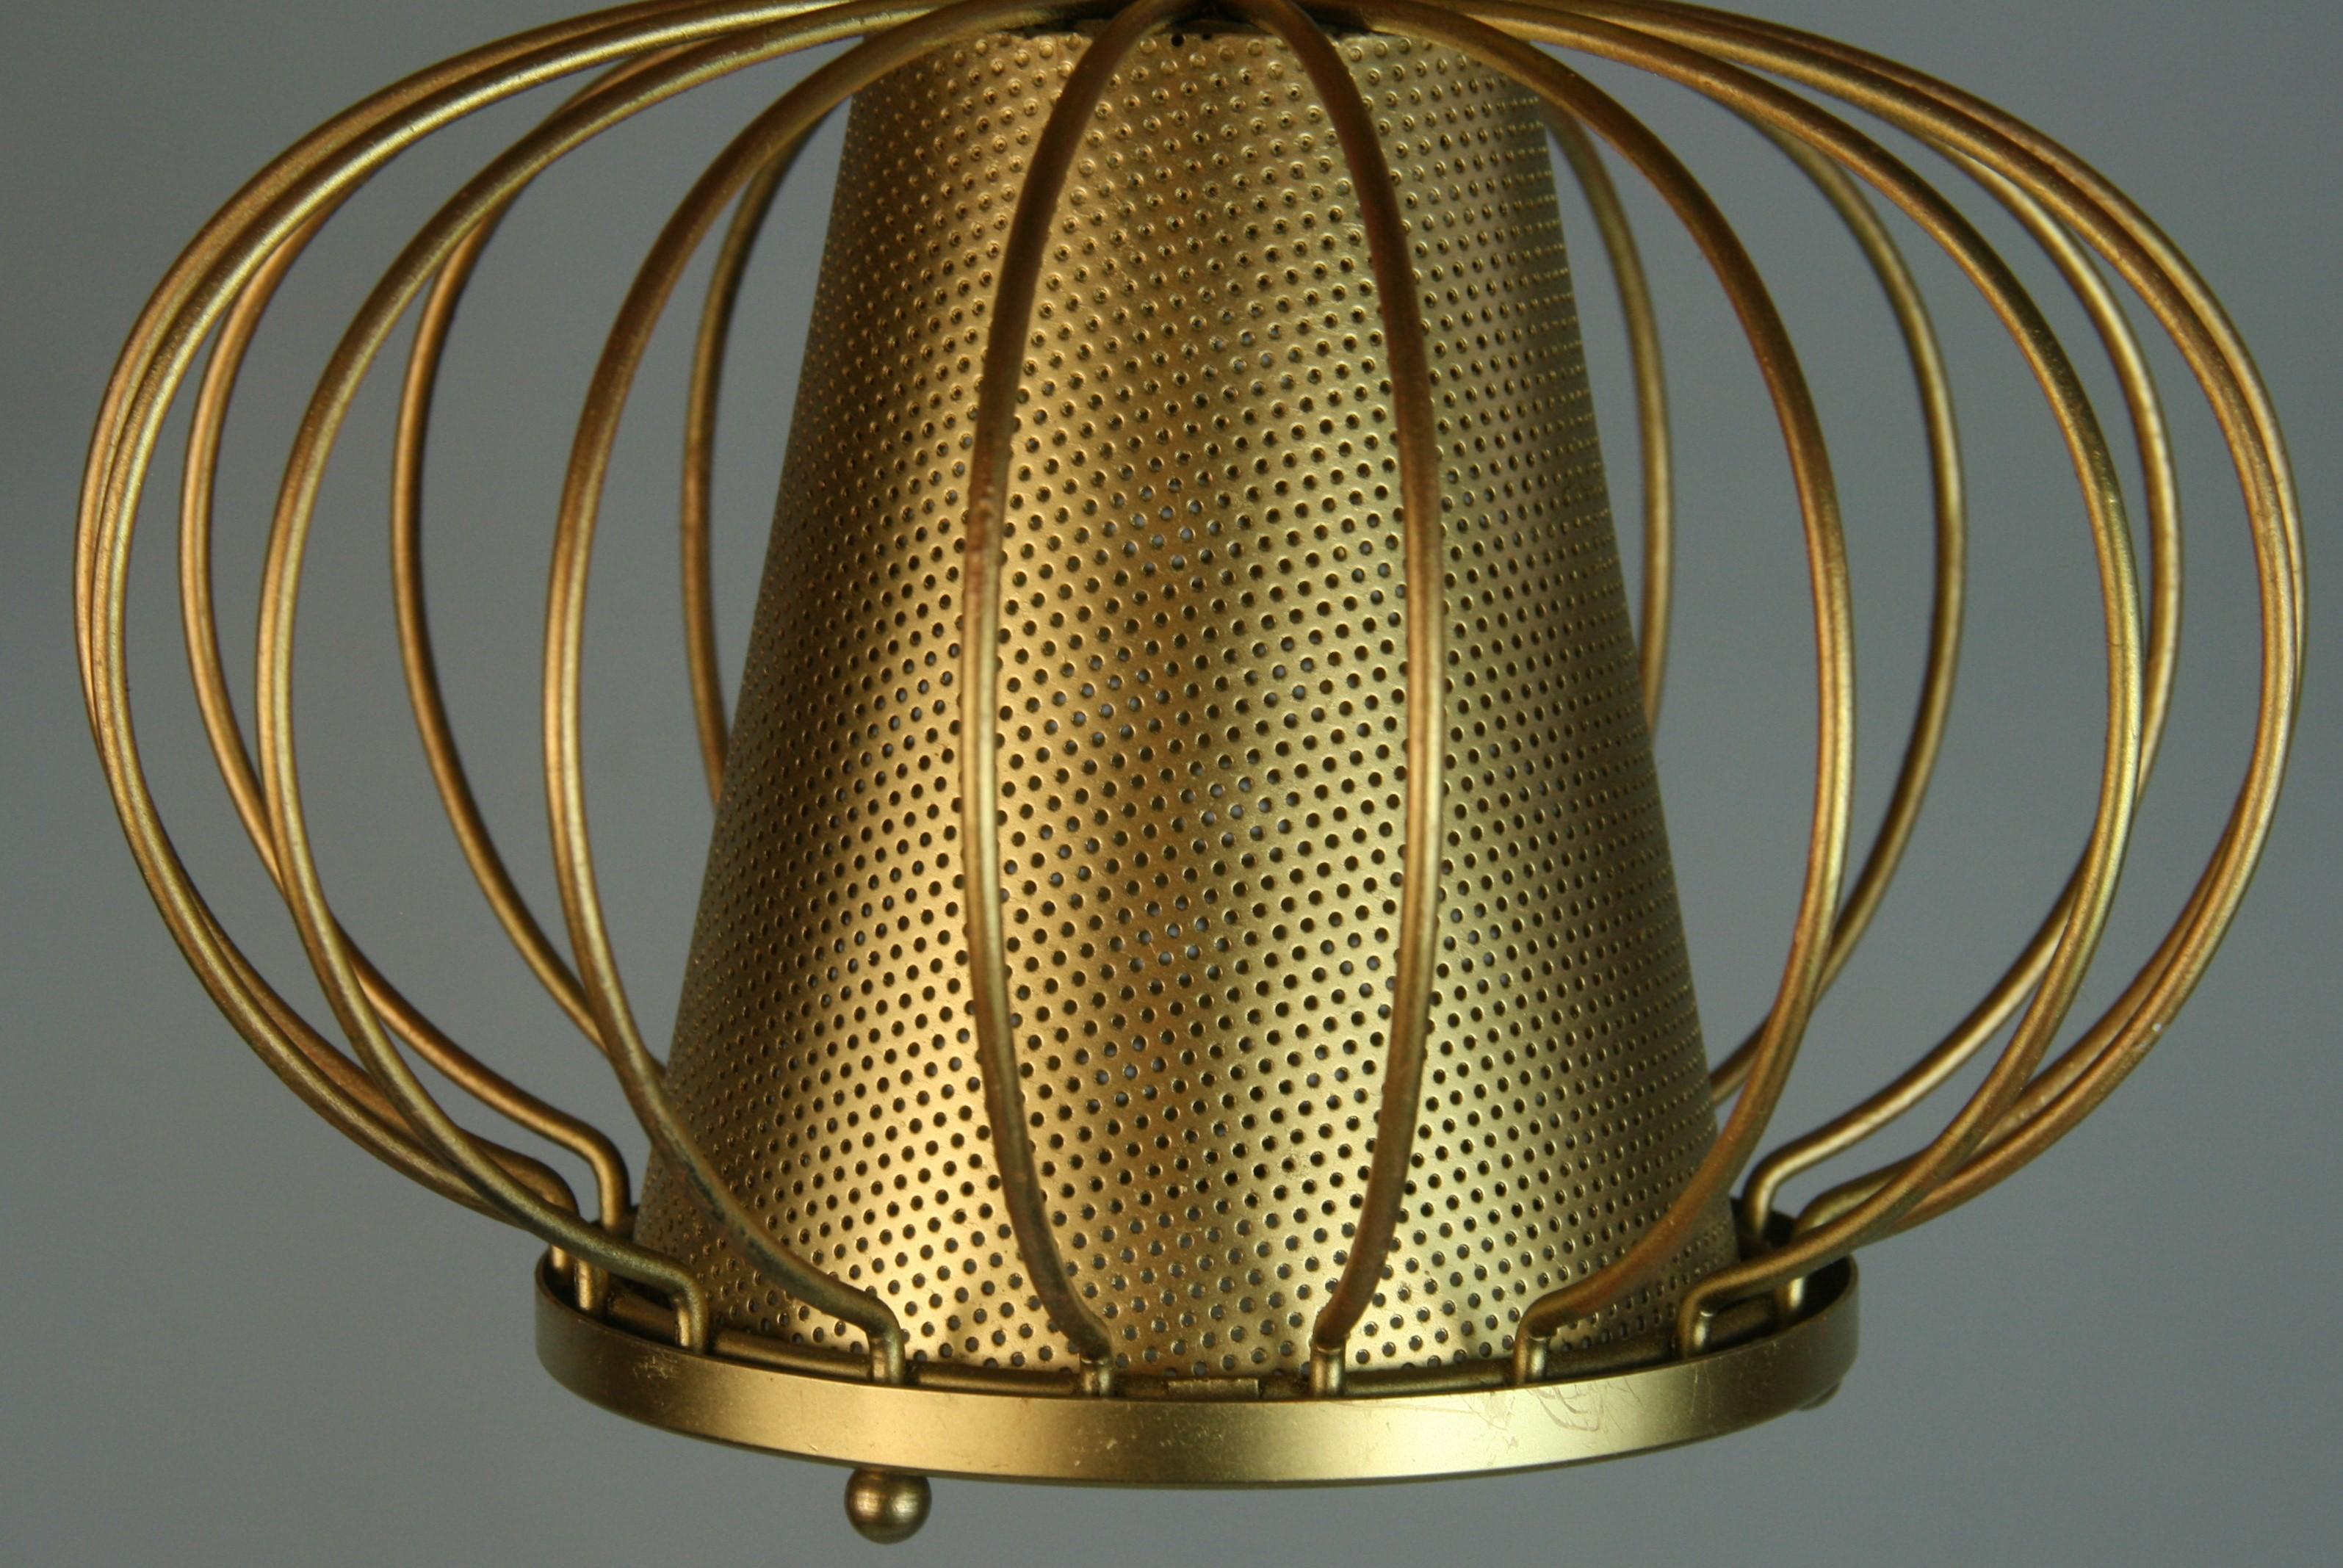 1600 Französisch  Kegelförmiger, perforierter Messingkern mit Milchglaslinsen in einem vergoldeten, gerippten Metallrahmen. Eine Edison-Glühbirne mit 75 Watt. 
Gegenwärtig kann eine Unterputzdose in eine Hängeleuchte umgewandelt werden.
2 Stück